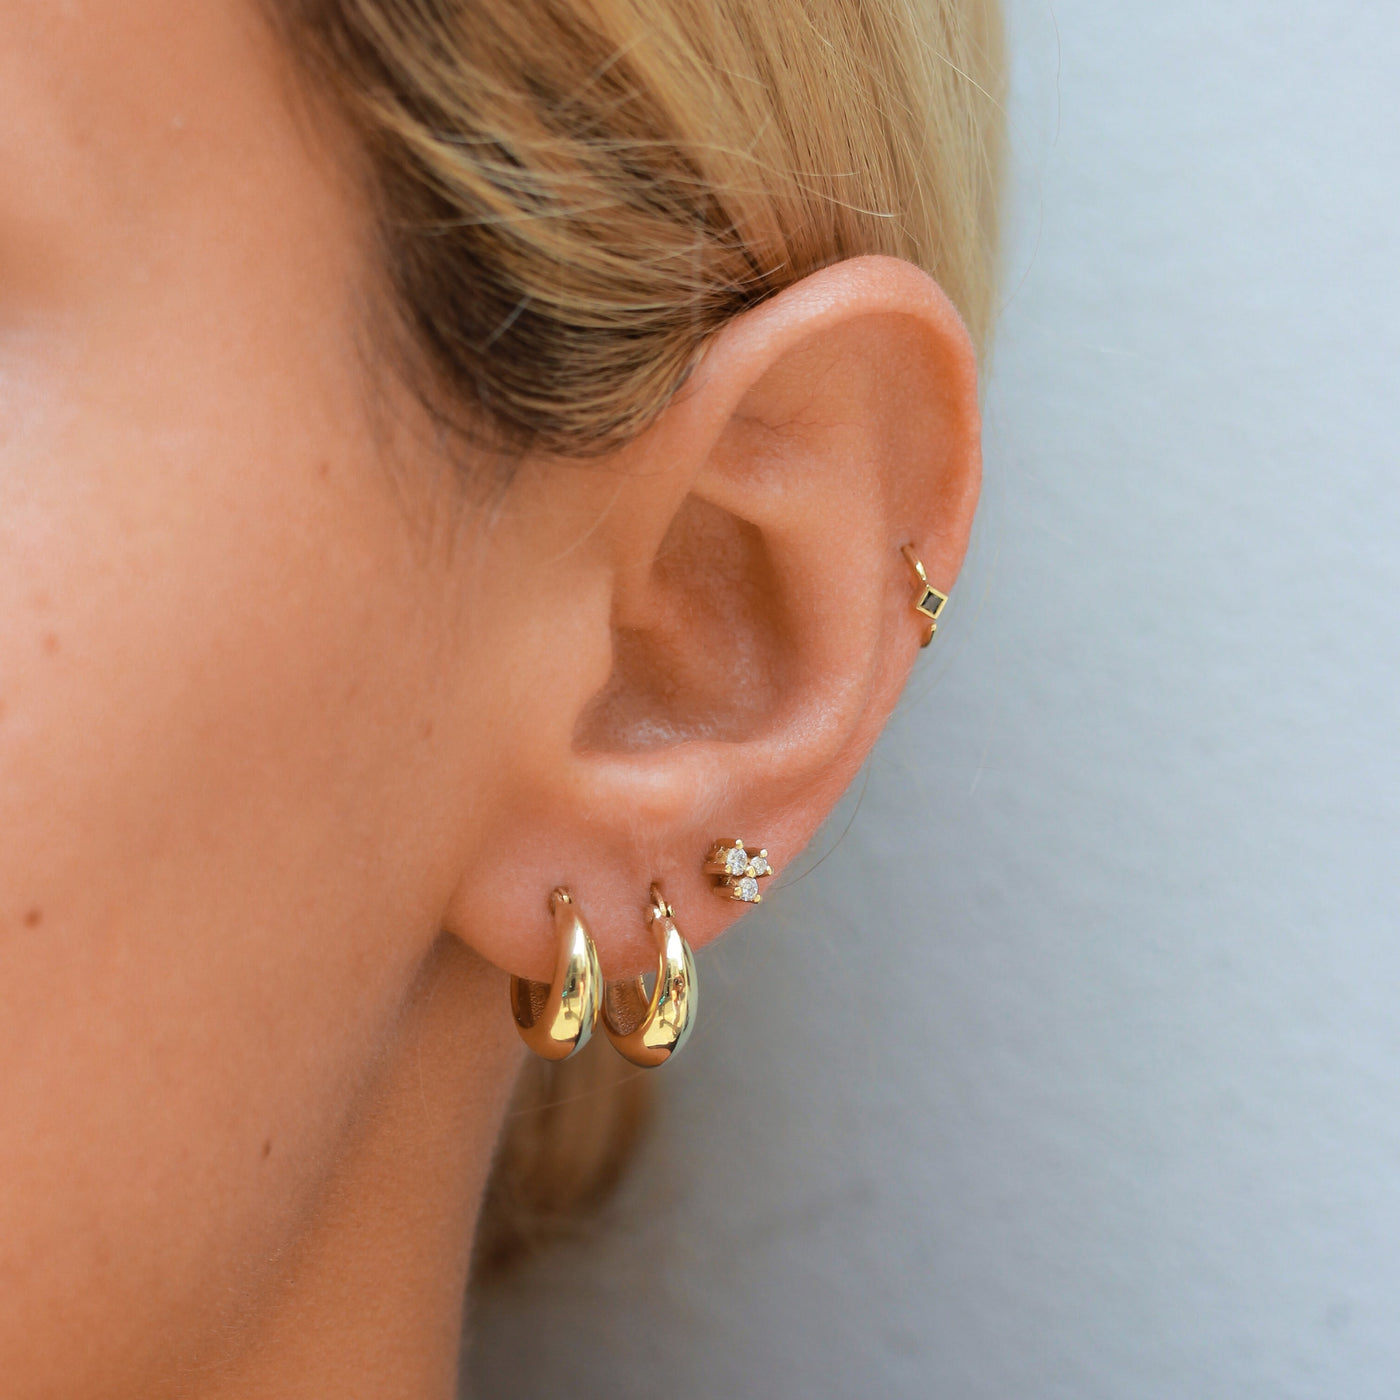 עגילי חישוק קיילי זהב 14K Earrings 